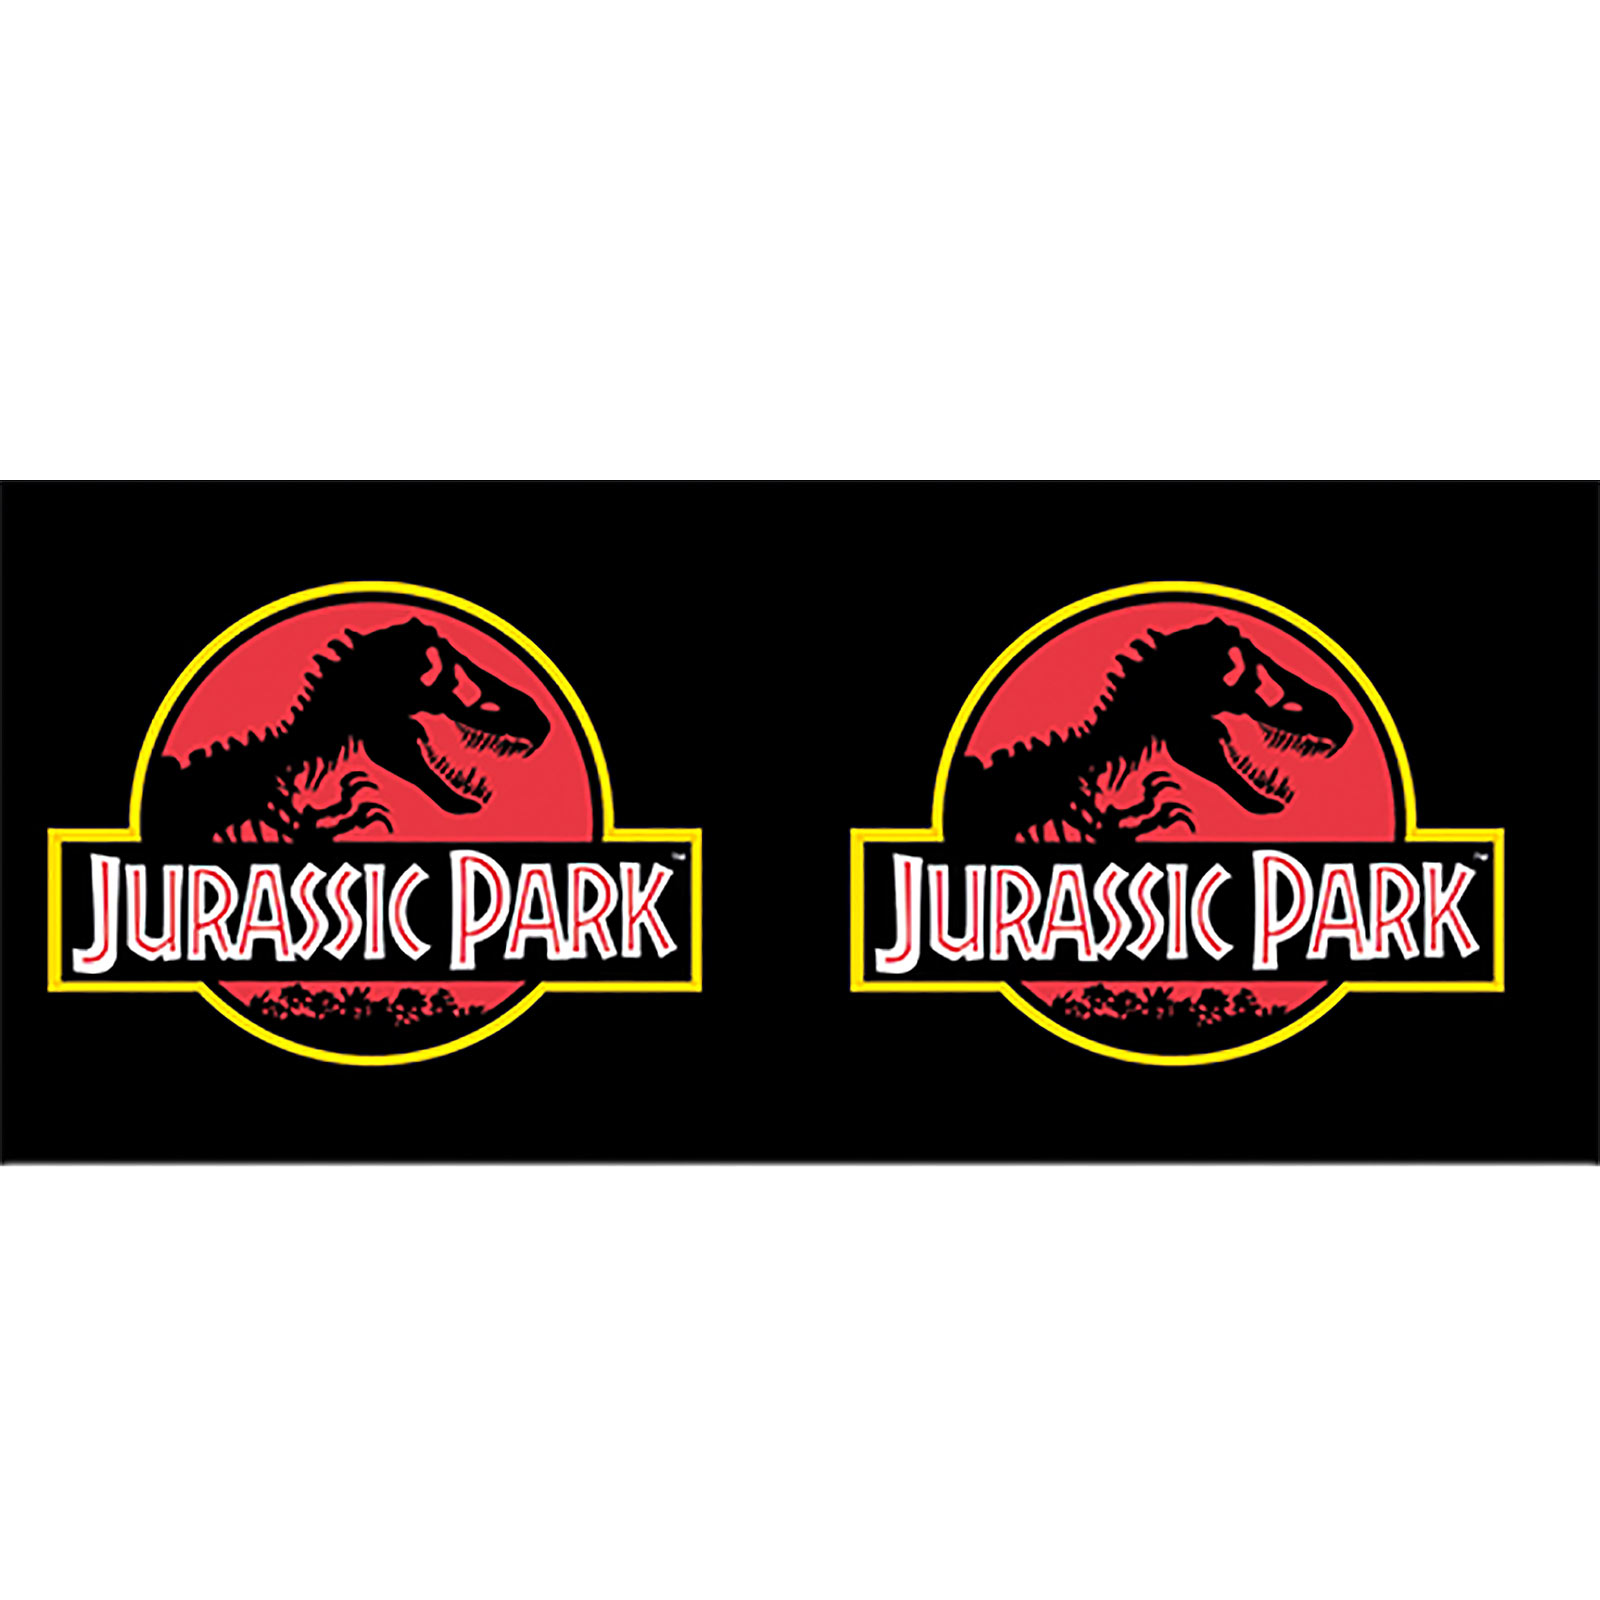 Jurassic Park - Logo Mug